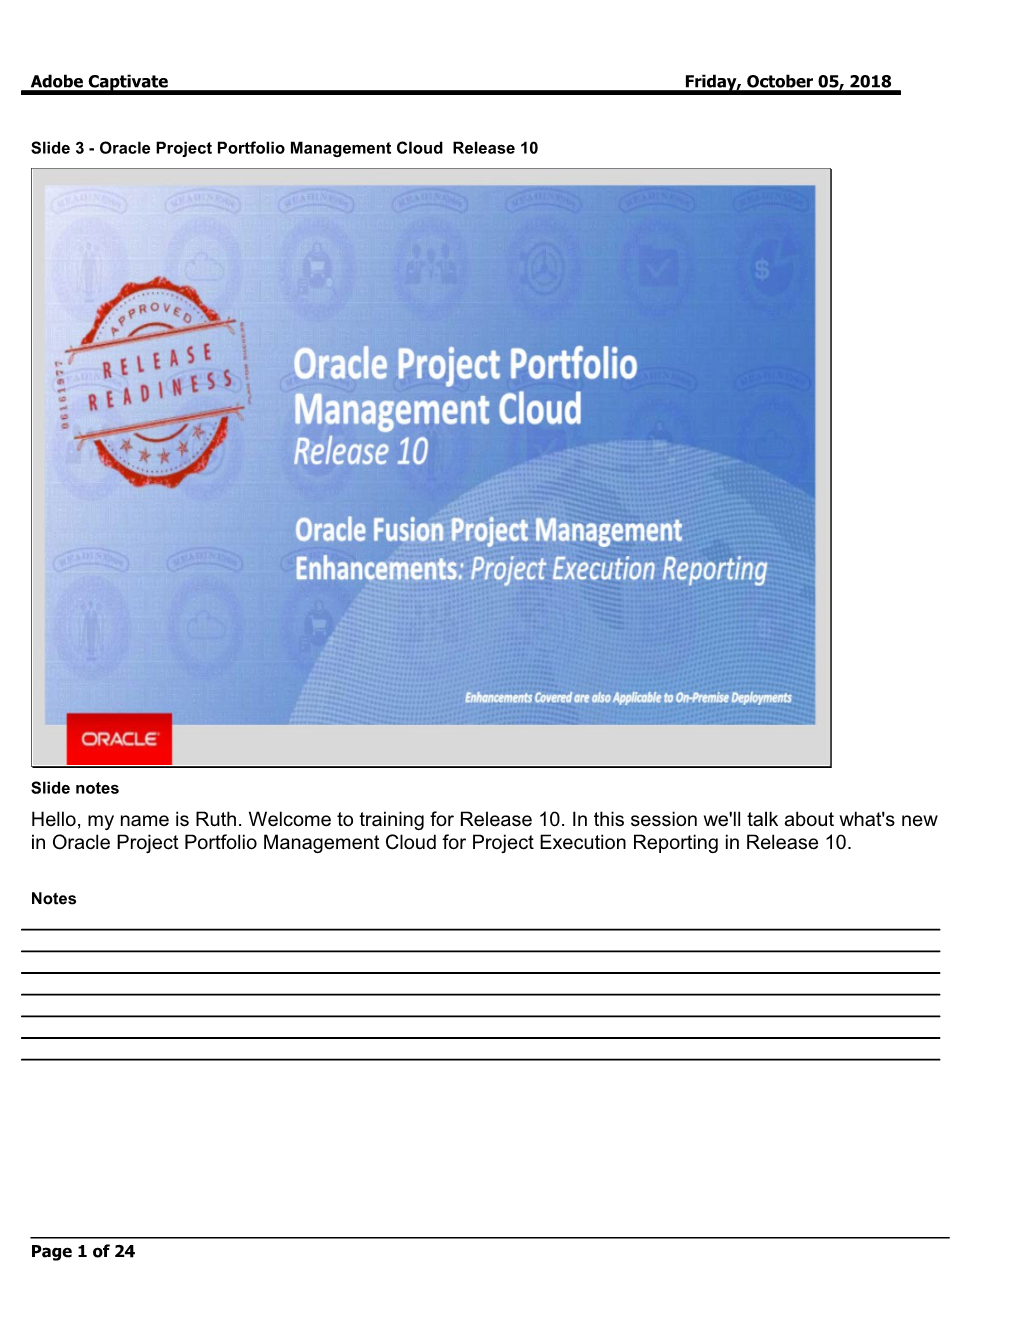 Slide 3 - Oracle Project Portfolio Management Cloud Release 10